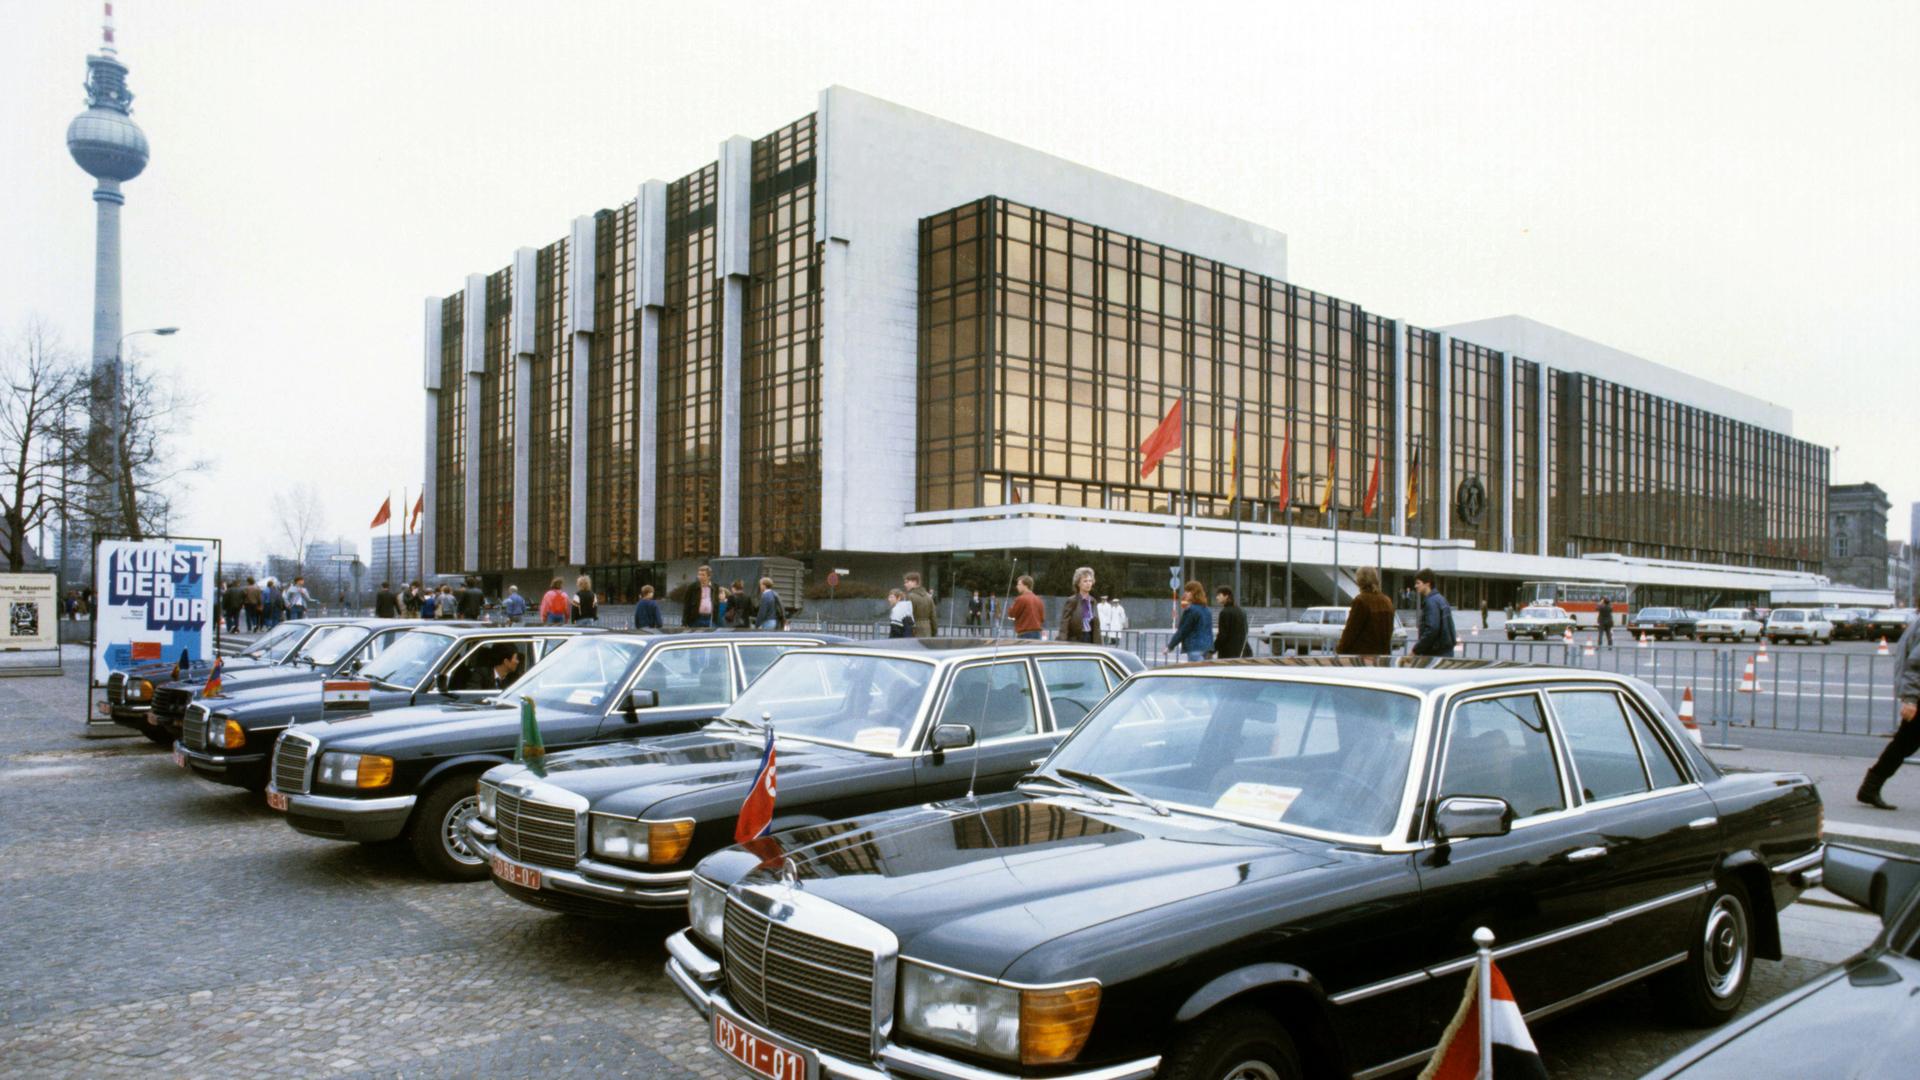 Vor dem Palast der Republik in Berlin parken im April 1986 zahlreiche Diplomatenfahrzeuge vom Typ Mercedes-Benz.